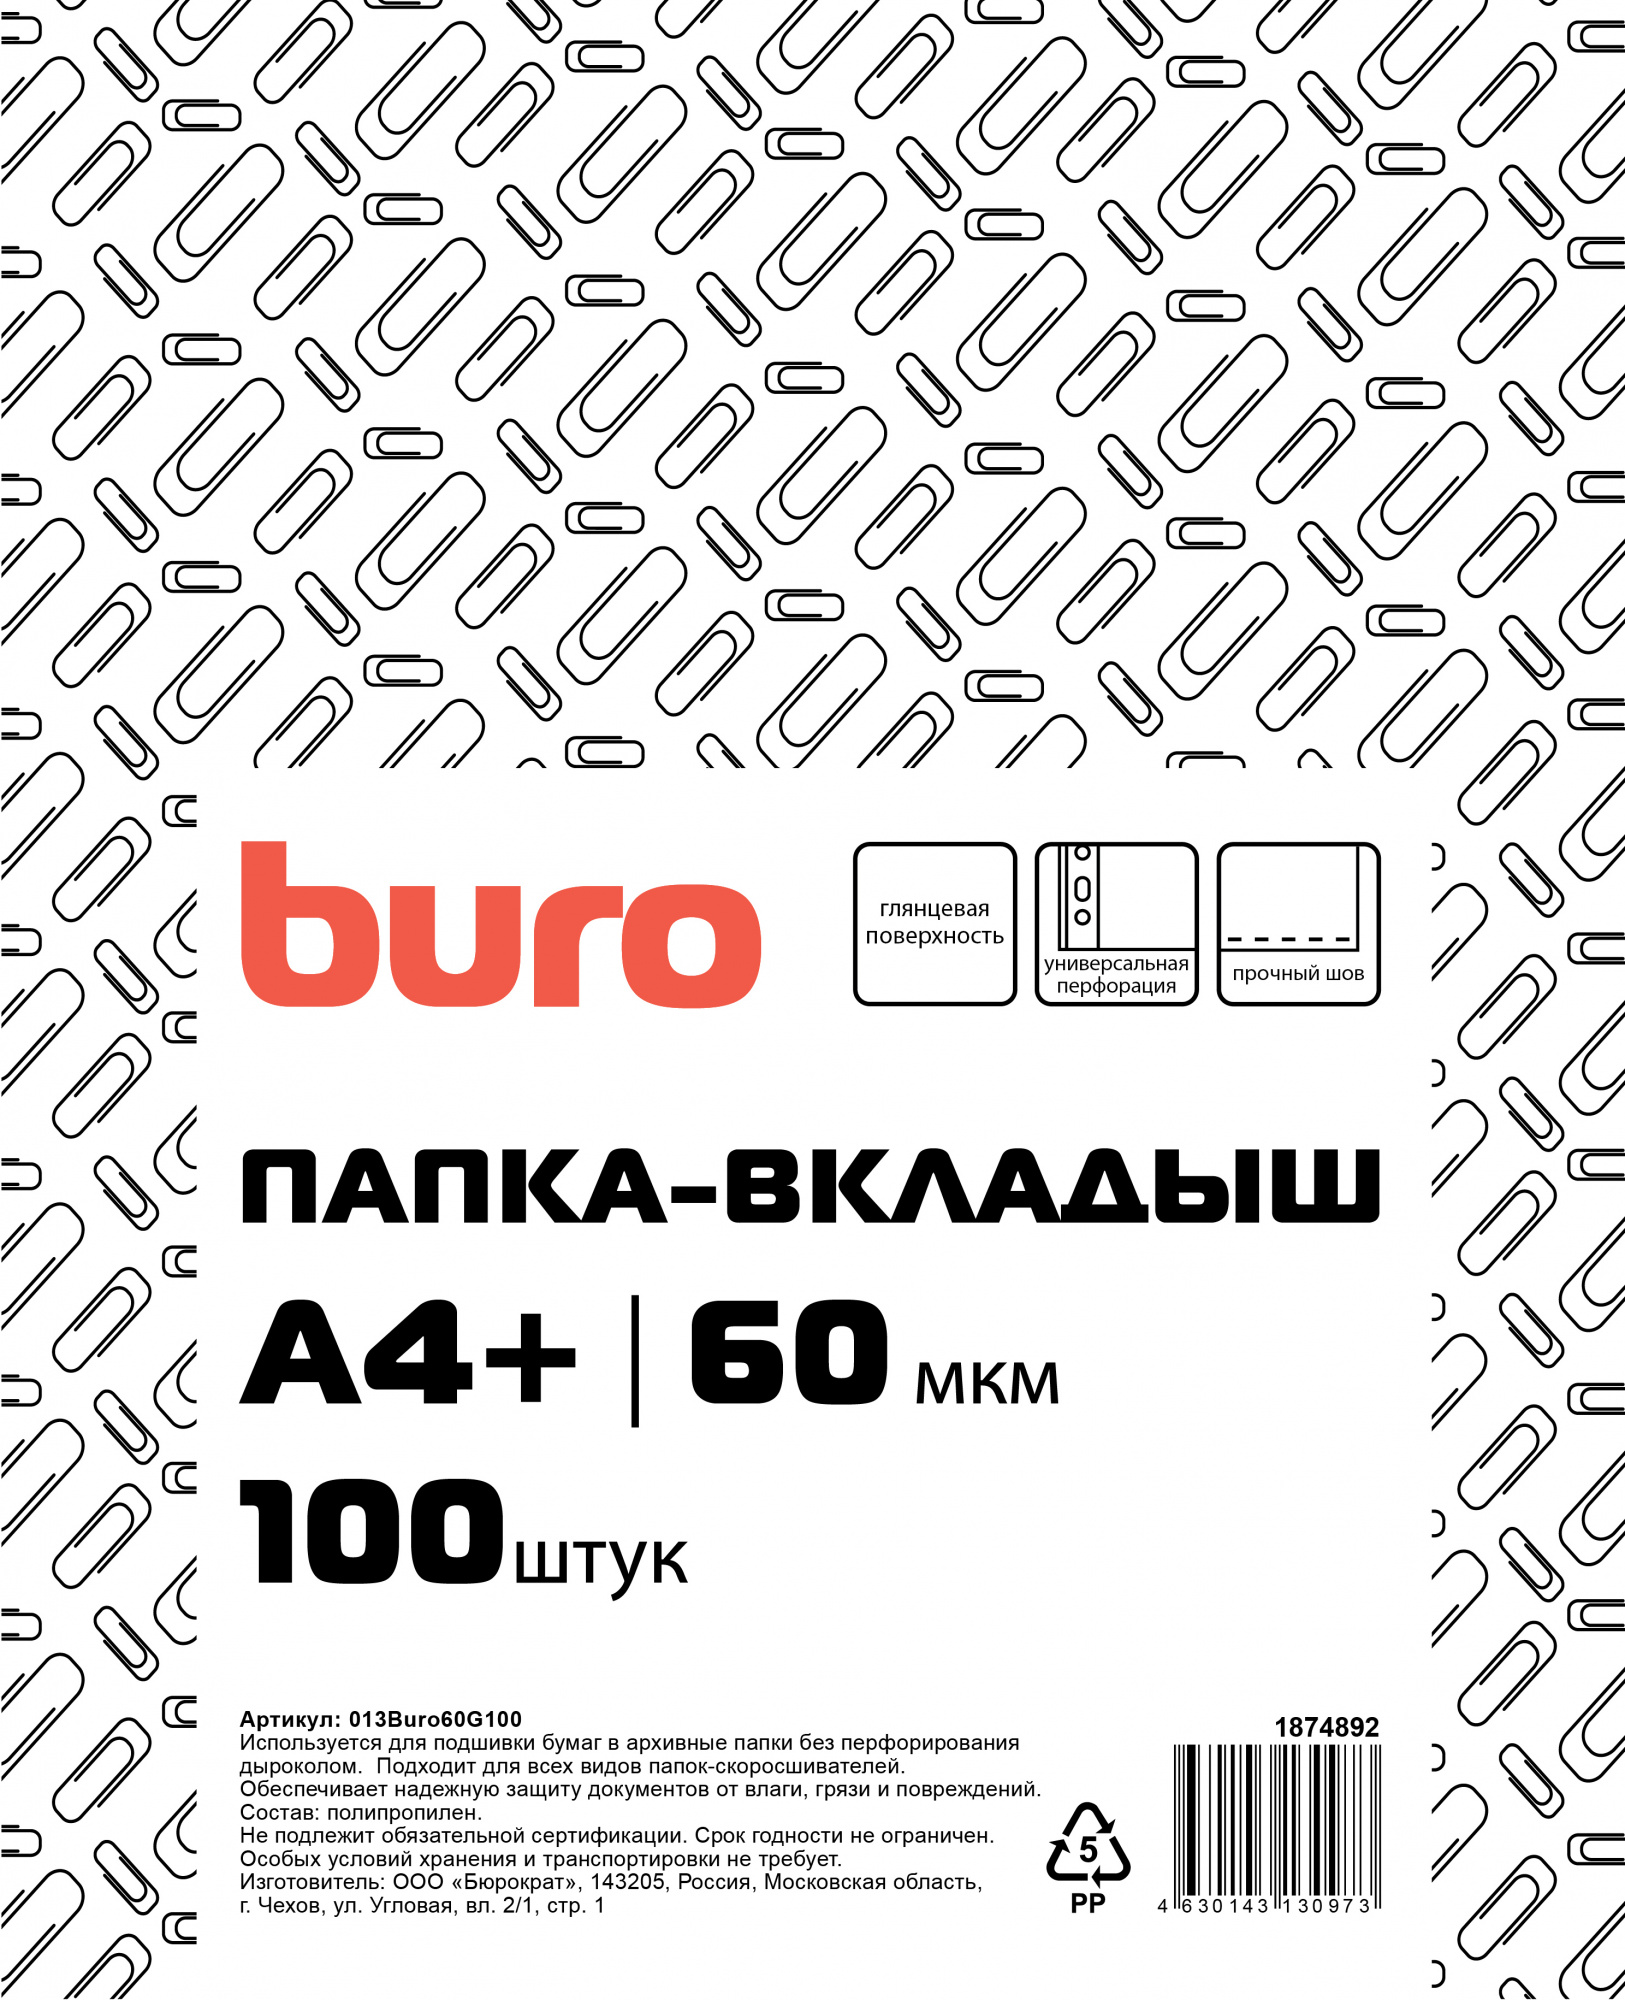 Купить файлы Buro 013BURO60G100 1874892 100 штук, цены на Мегамаркет | Артикул: 600012226744